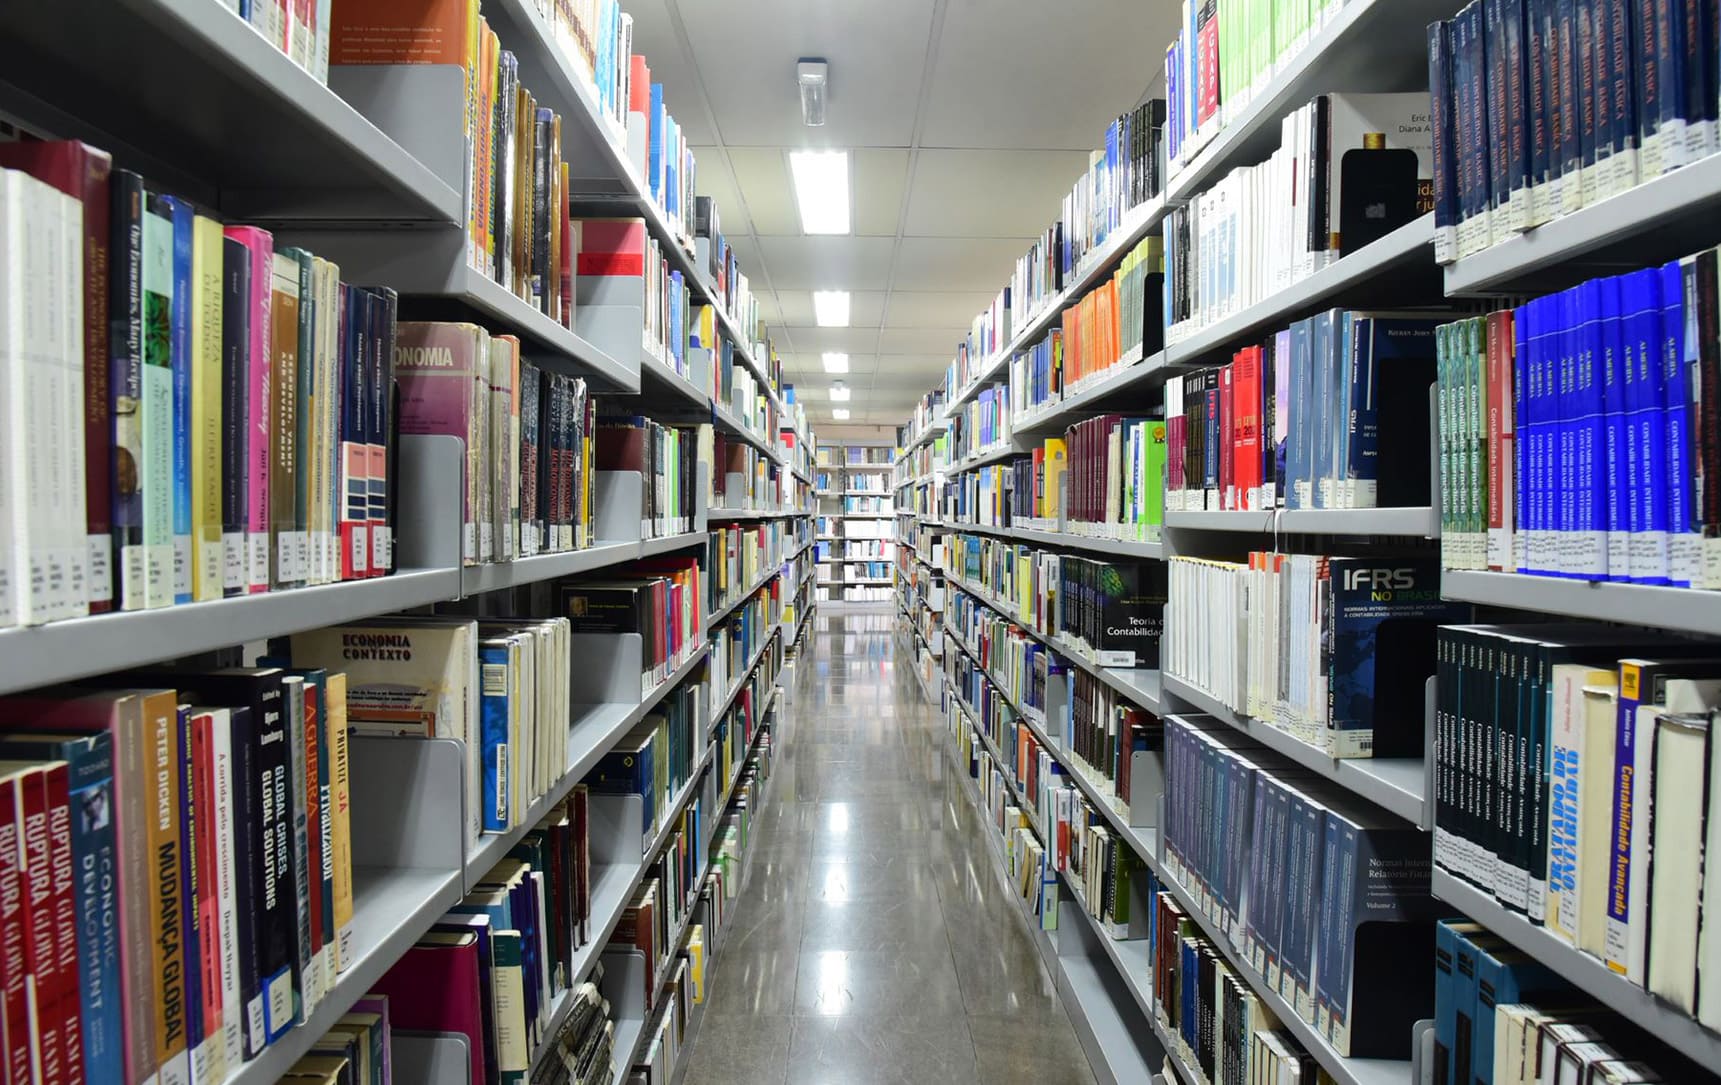 Imagem do corredor de livros da biblioteca